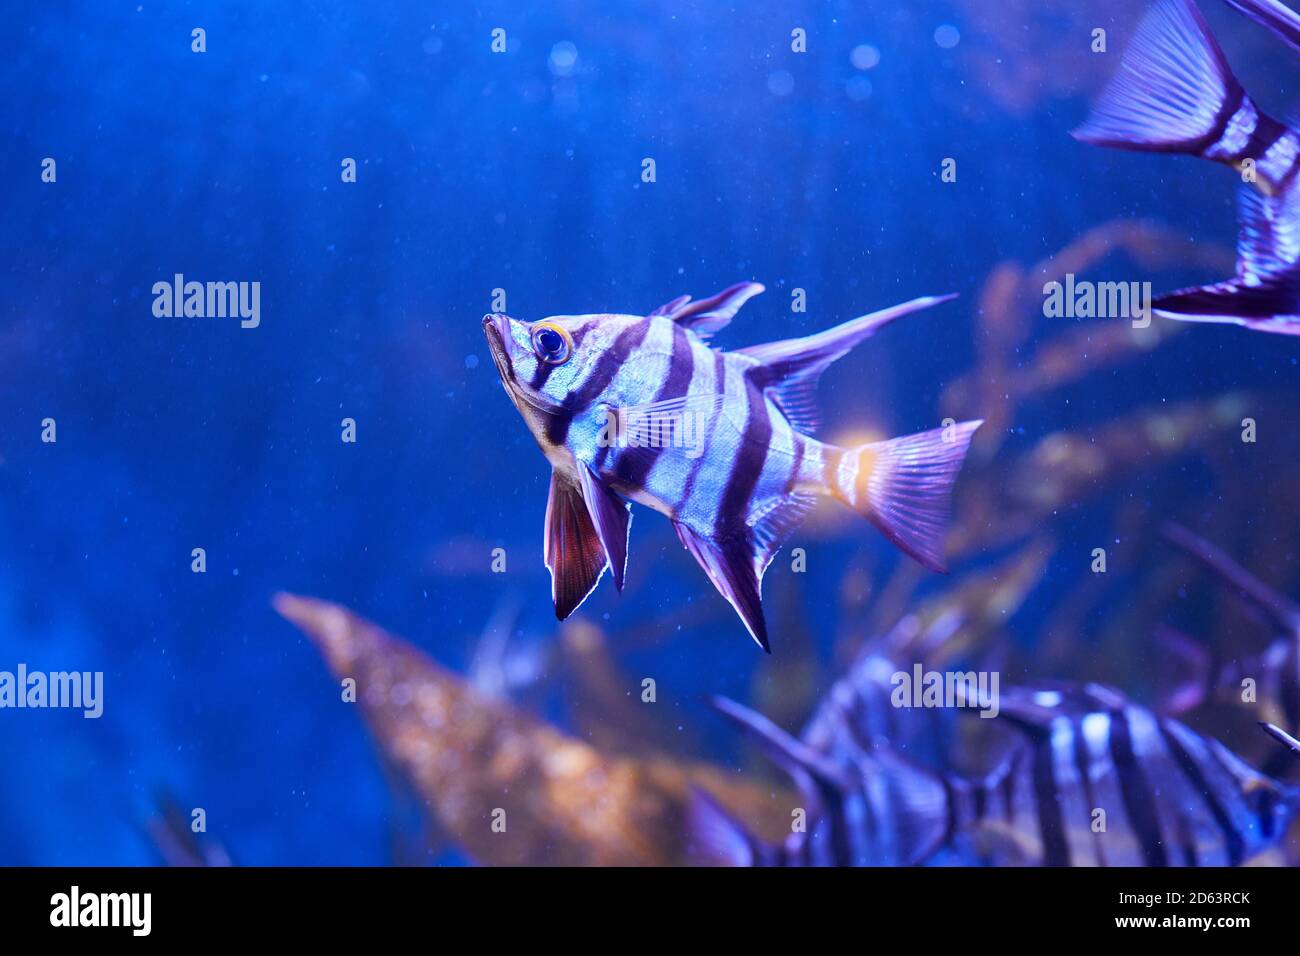 Mujer mayor (Enoplosus armatus) Un pez a rayas blanco y negro con una cabeza pequeña y aletas largas en la parte superior nadar en el acuario Foto de stock